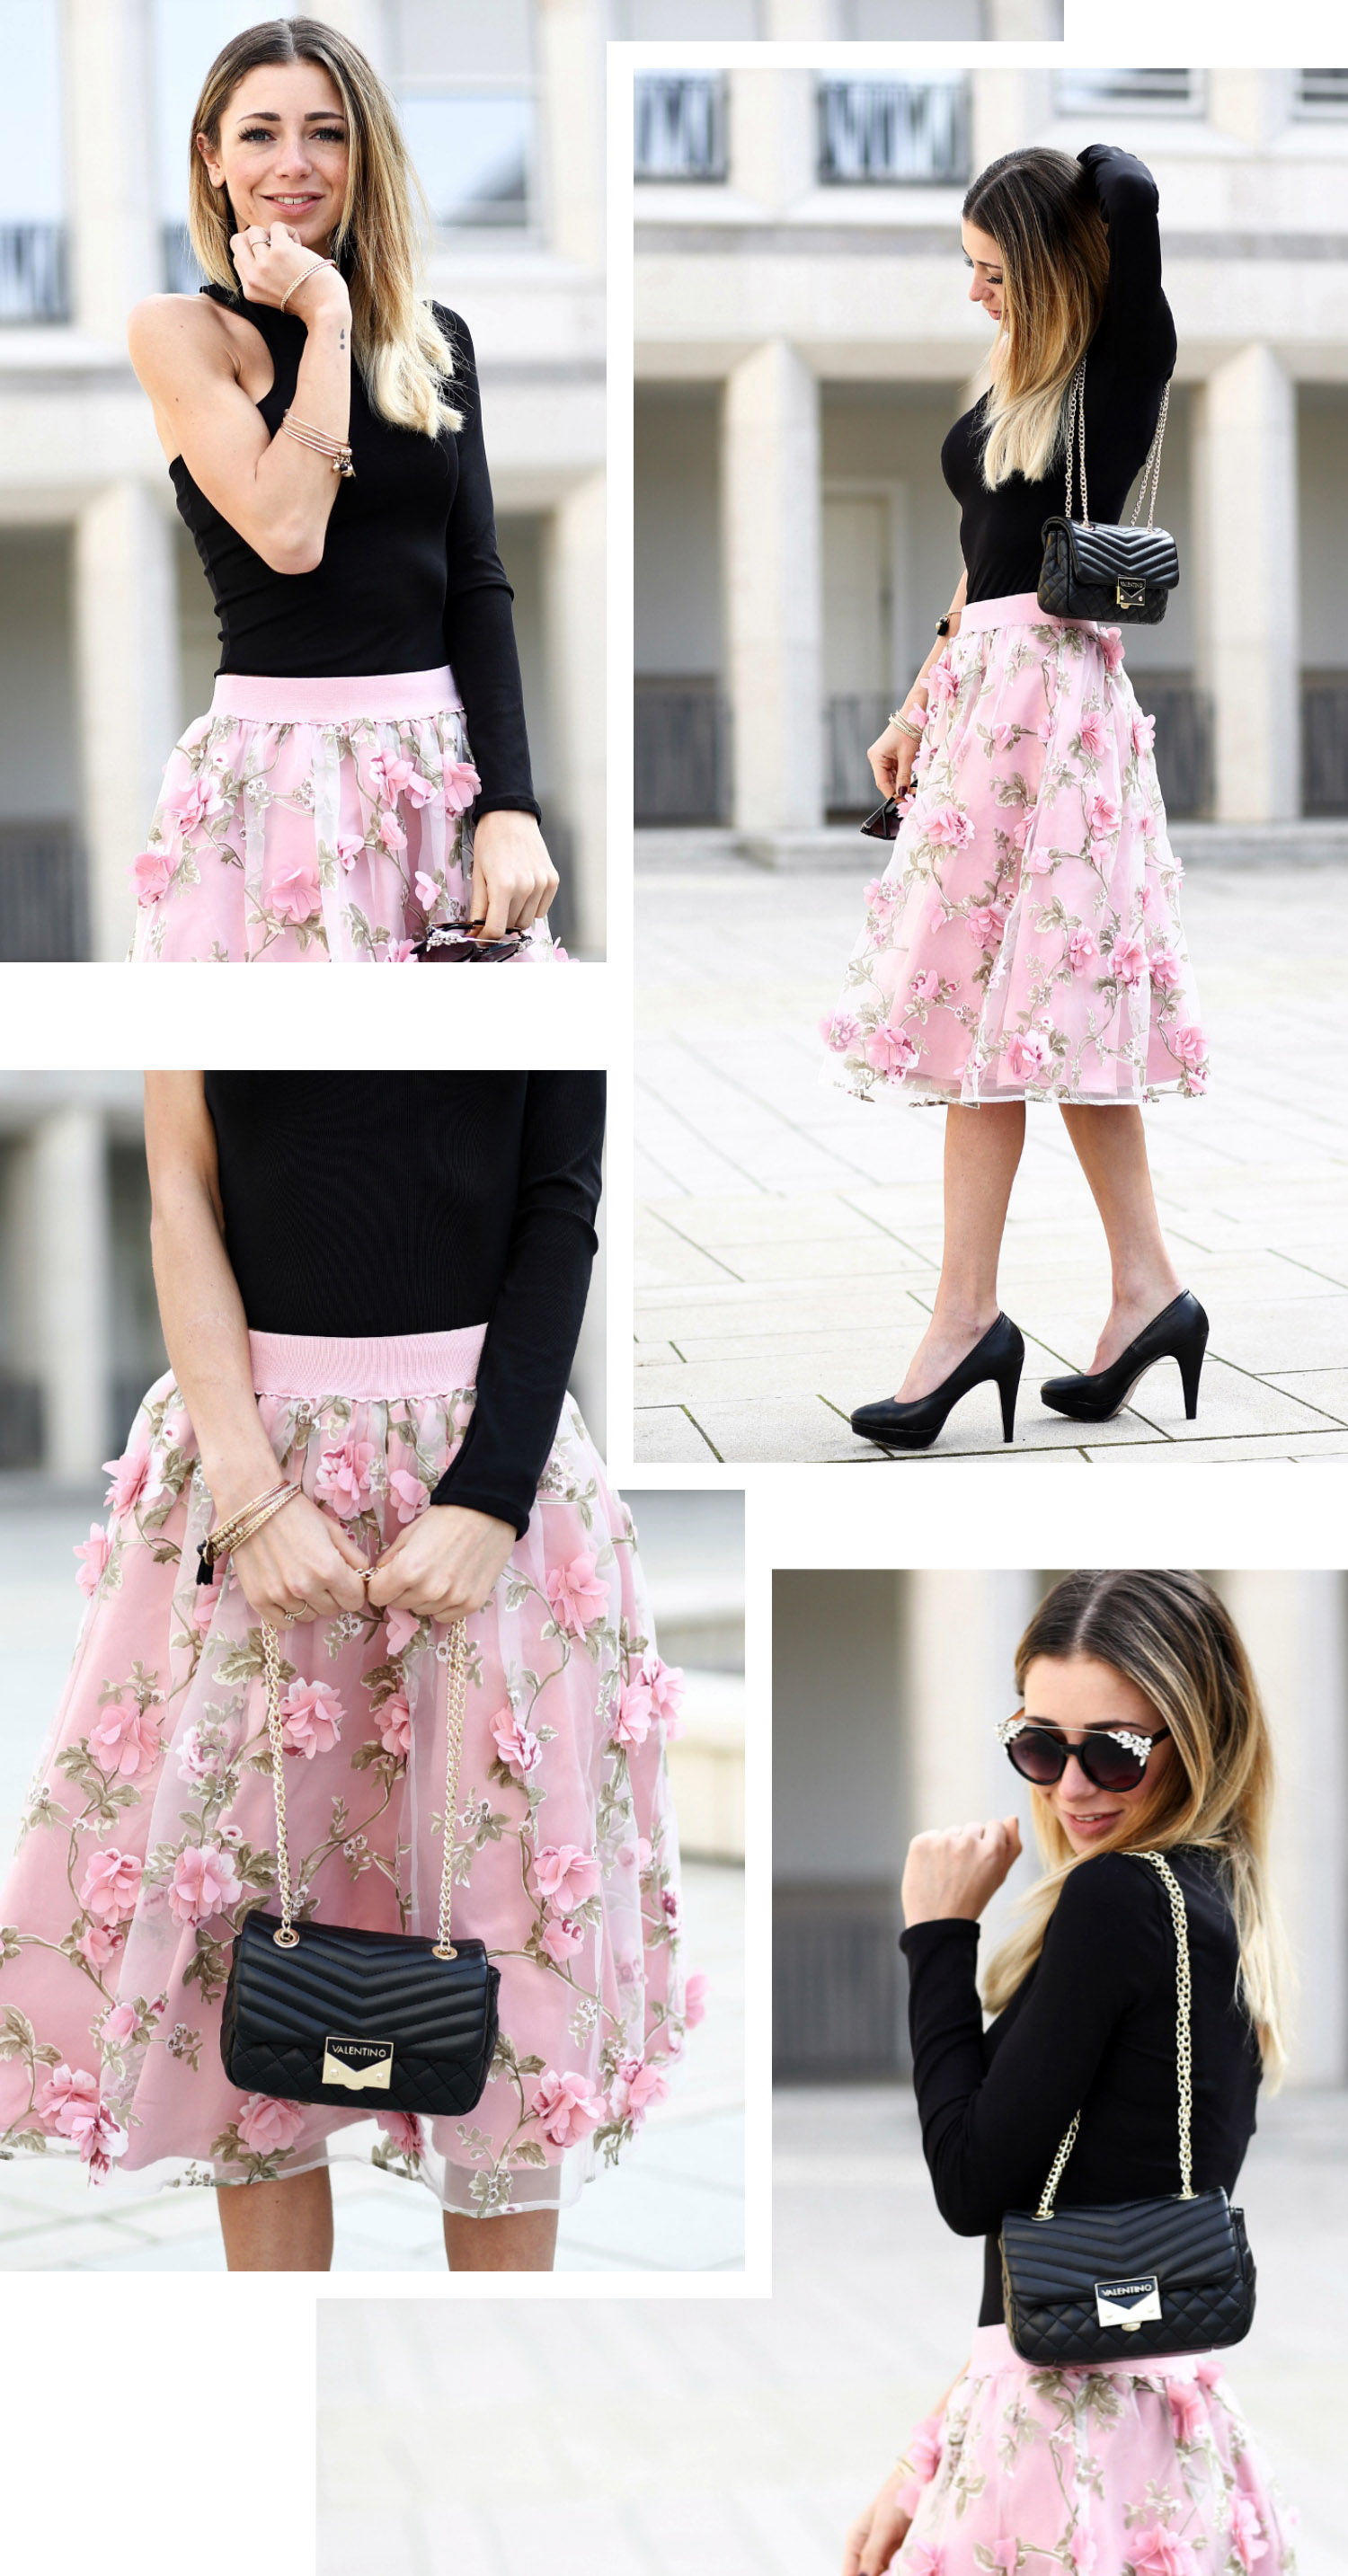 minamia-fashionblog-koeln-outfit-rosa-rock-collage